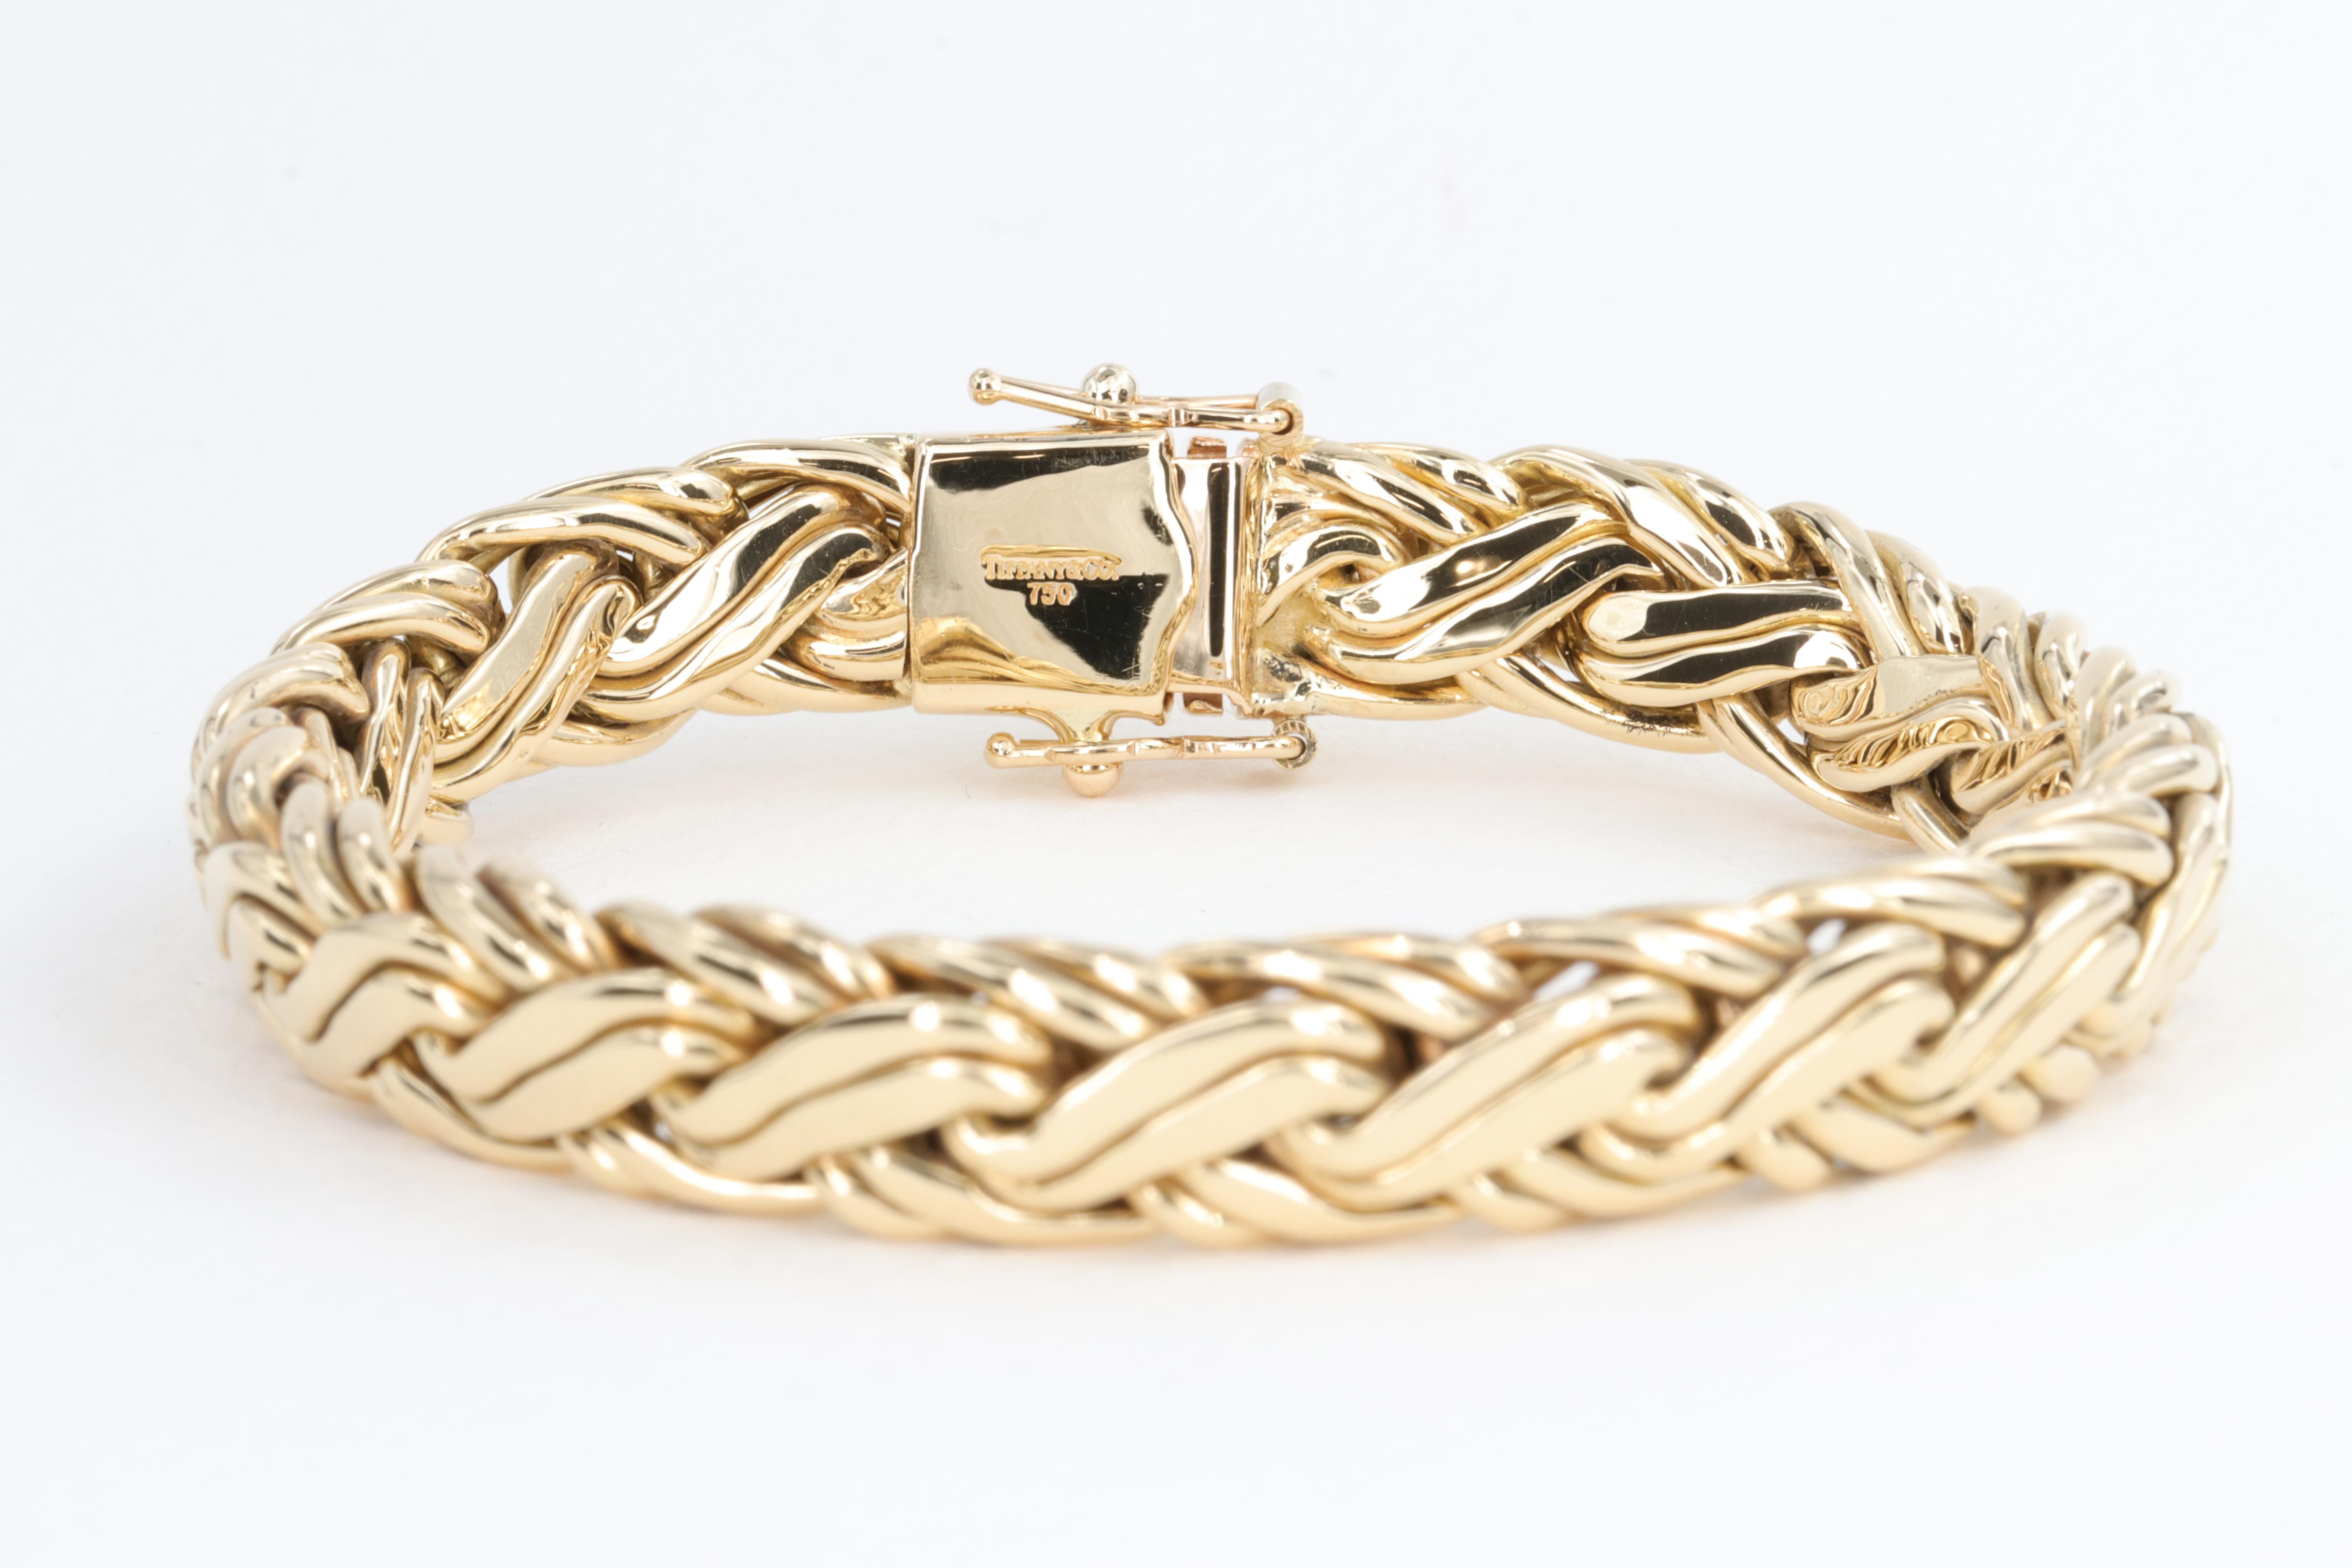 russian wheat chain bracelet